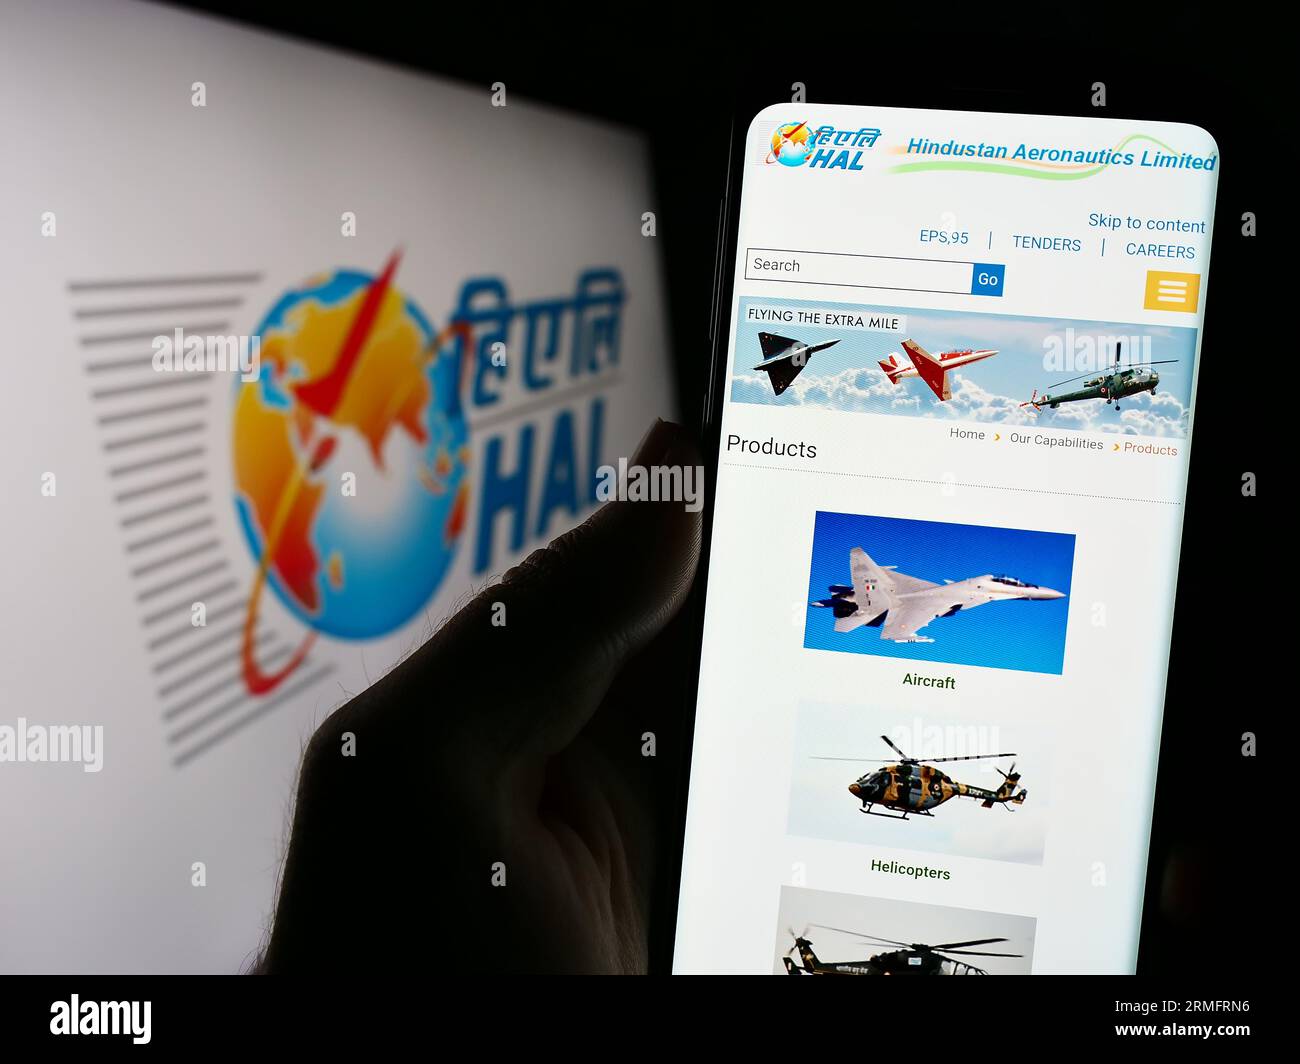 Persona in possesso di smartphone con pagina Web dell'azienda Hindustan Aeronautics Limited (HAL) sullo schermo con logo. Concentrarsi sul centro del display del telefono. Foto Stock